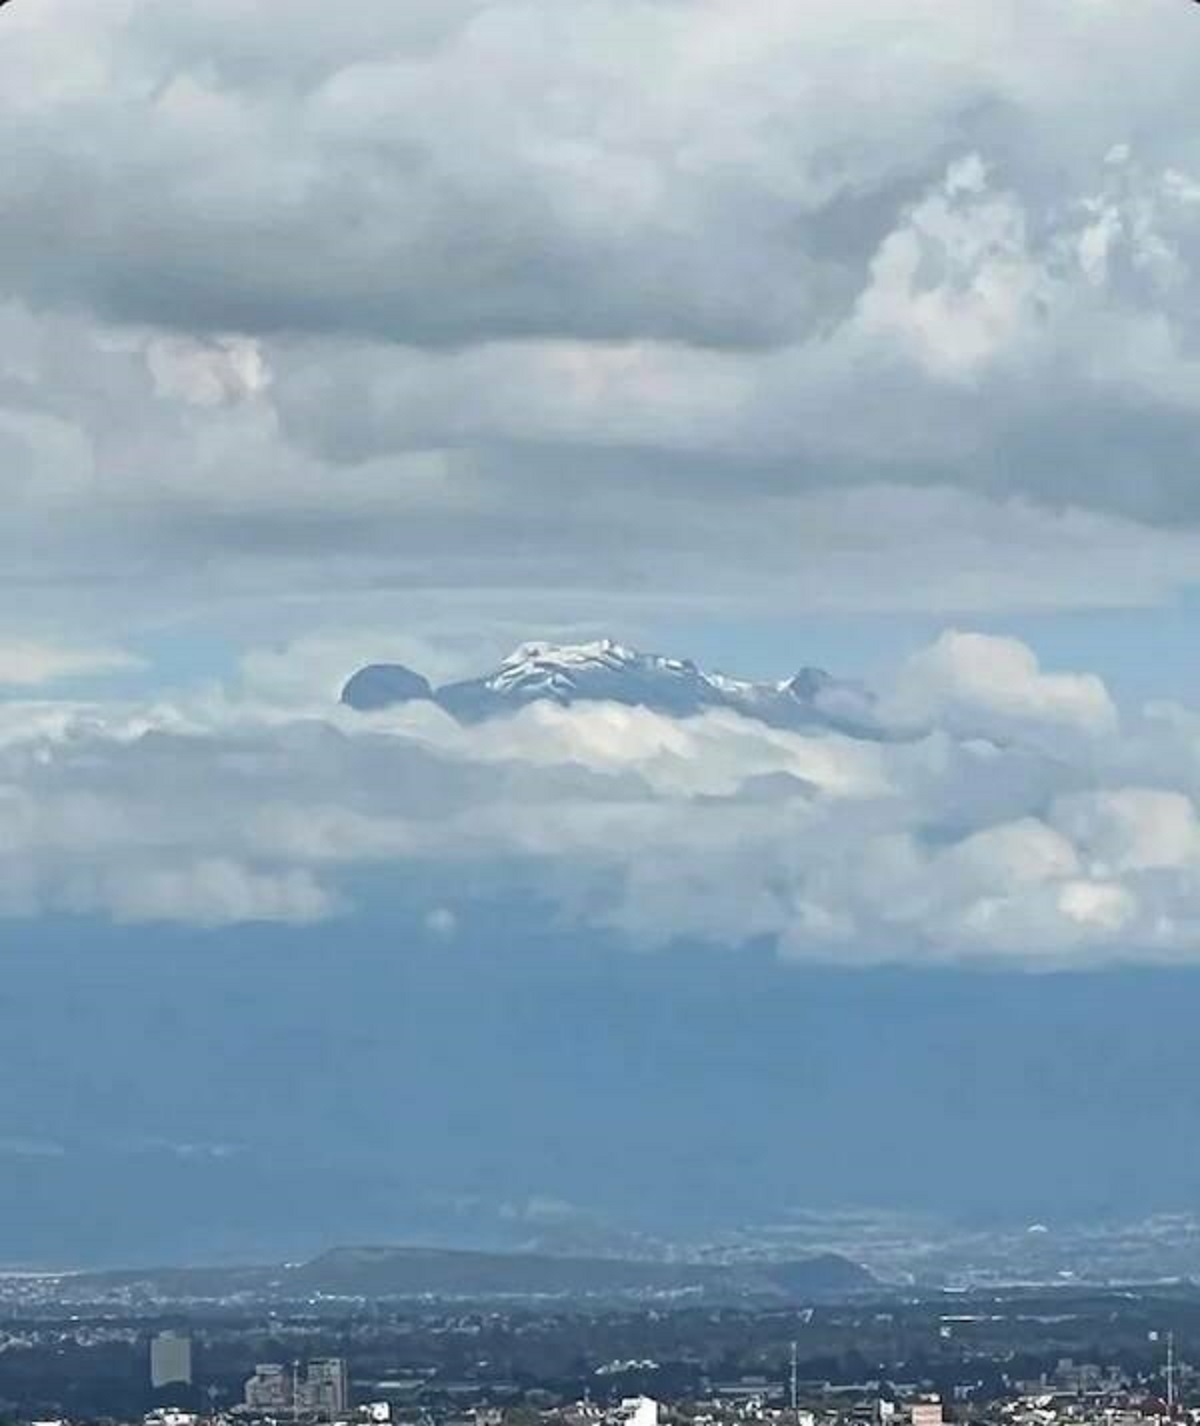 Mexico City’s Iztaccíhuatl mountain.